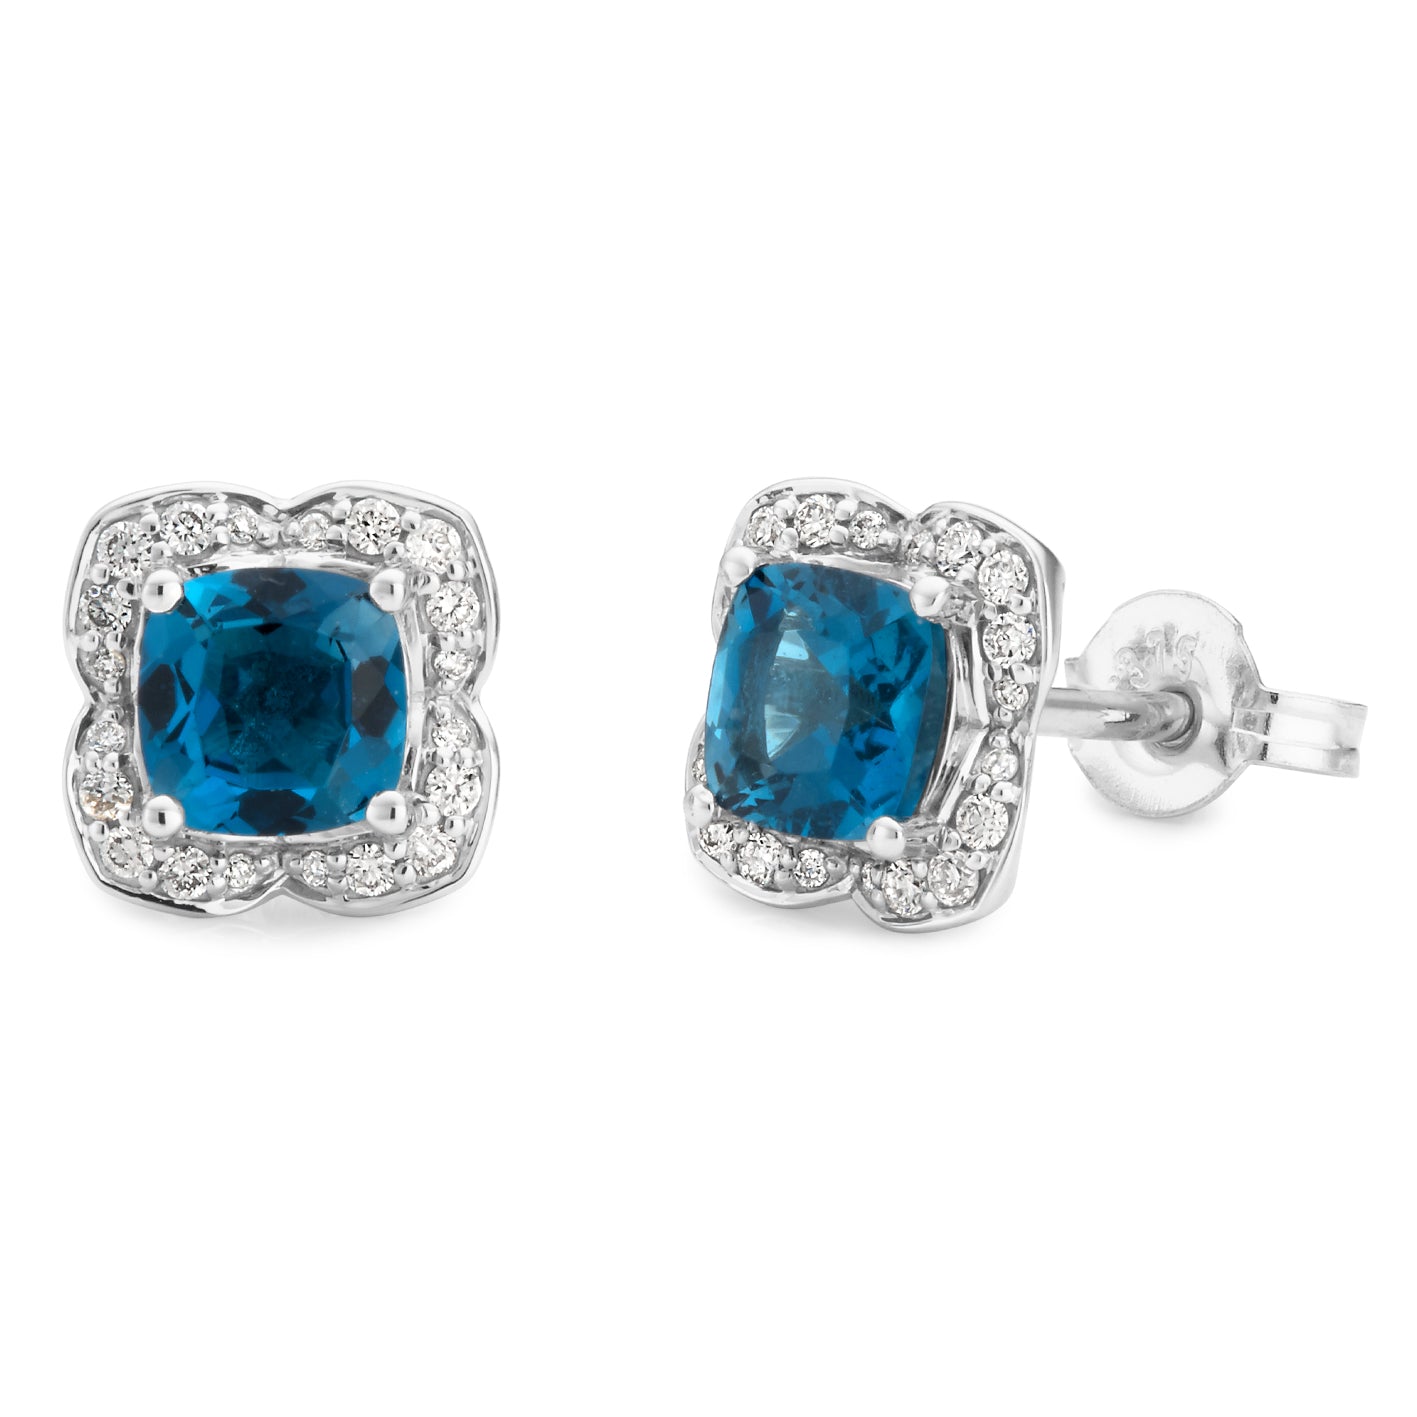 London Blue Topaz & Diamond Stud Earrings